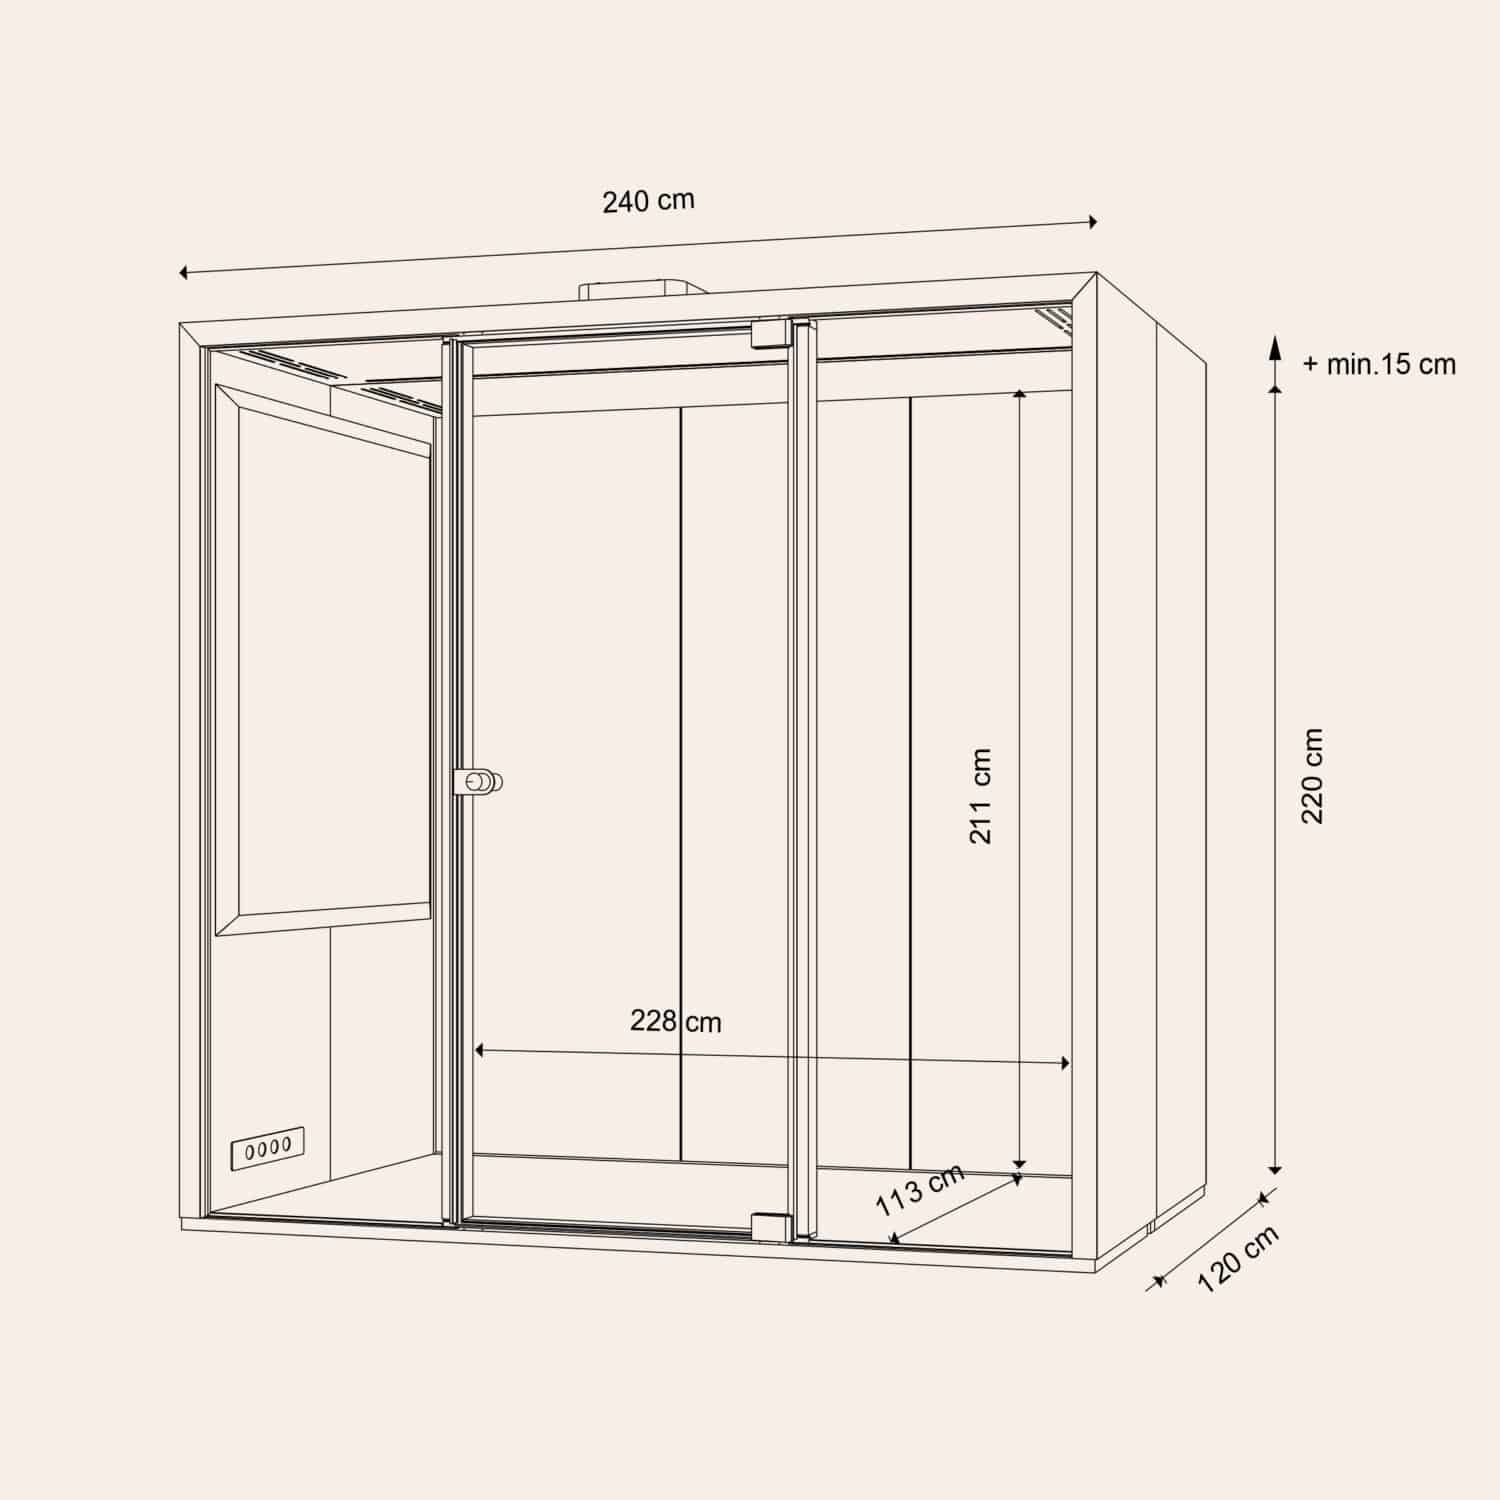 Taiga-Concept-Lohko-Box-2-measurement